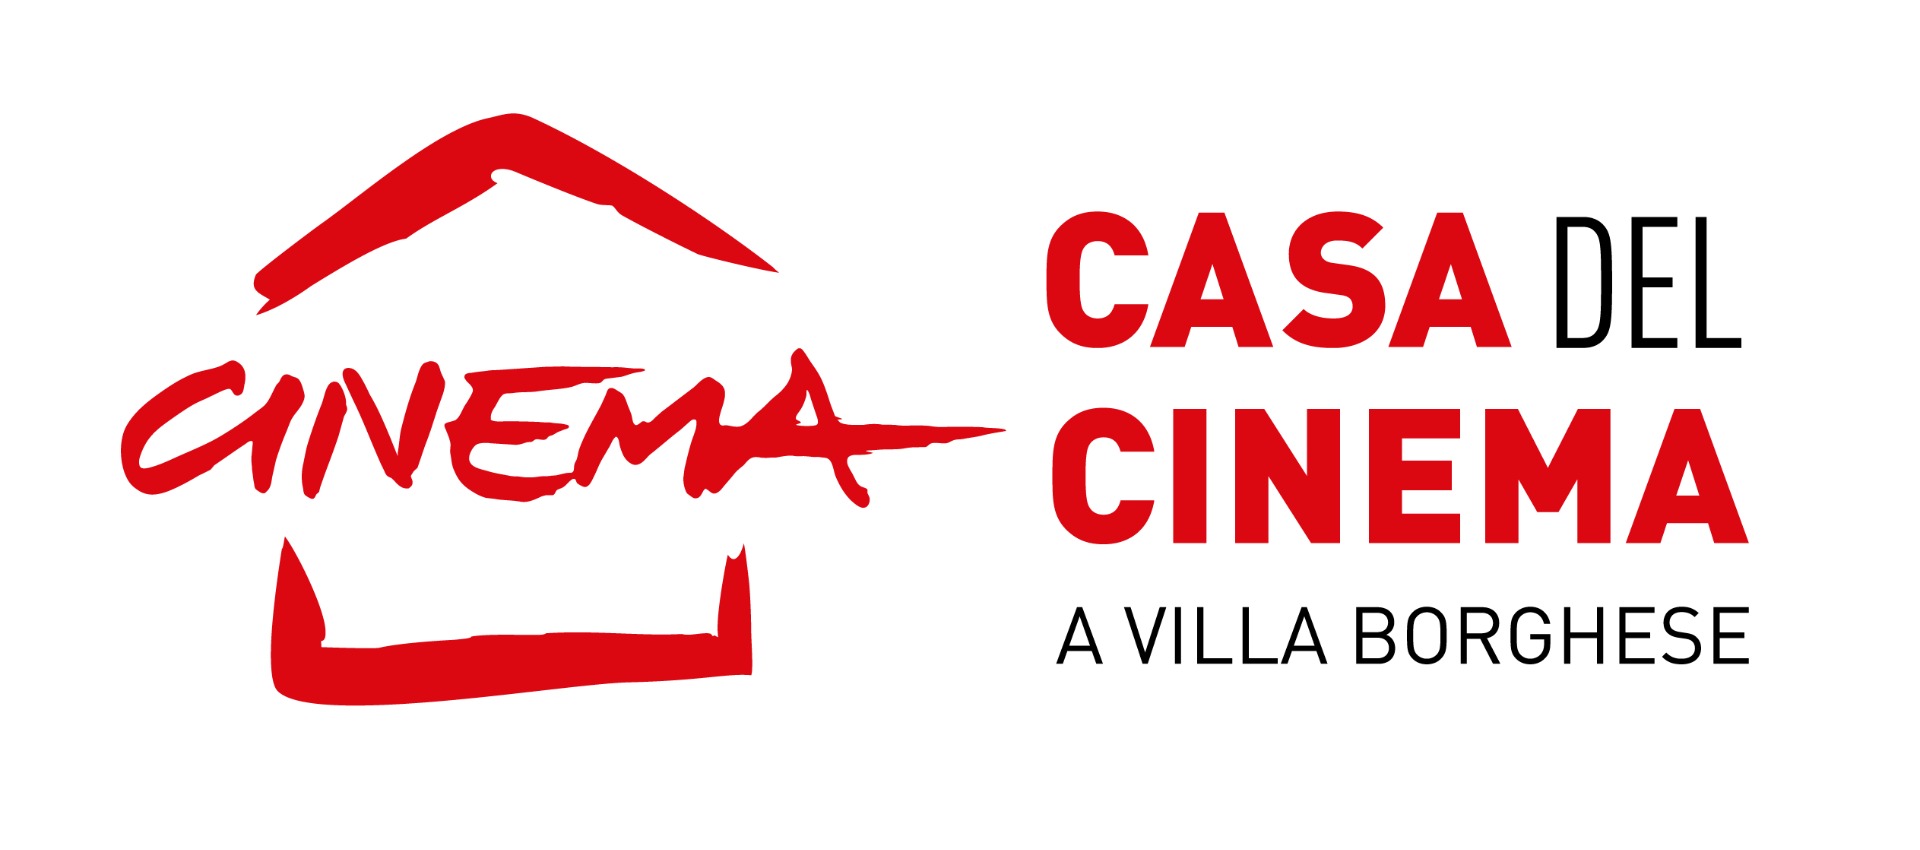 Fondazione Cinema per Roma: dal 5 maggio la nuova programmazione della Casa del Cinema